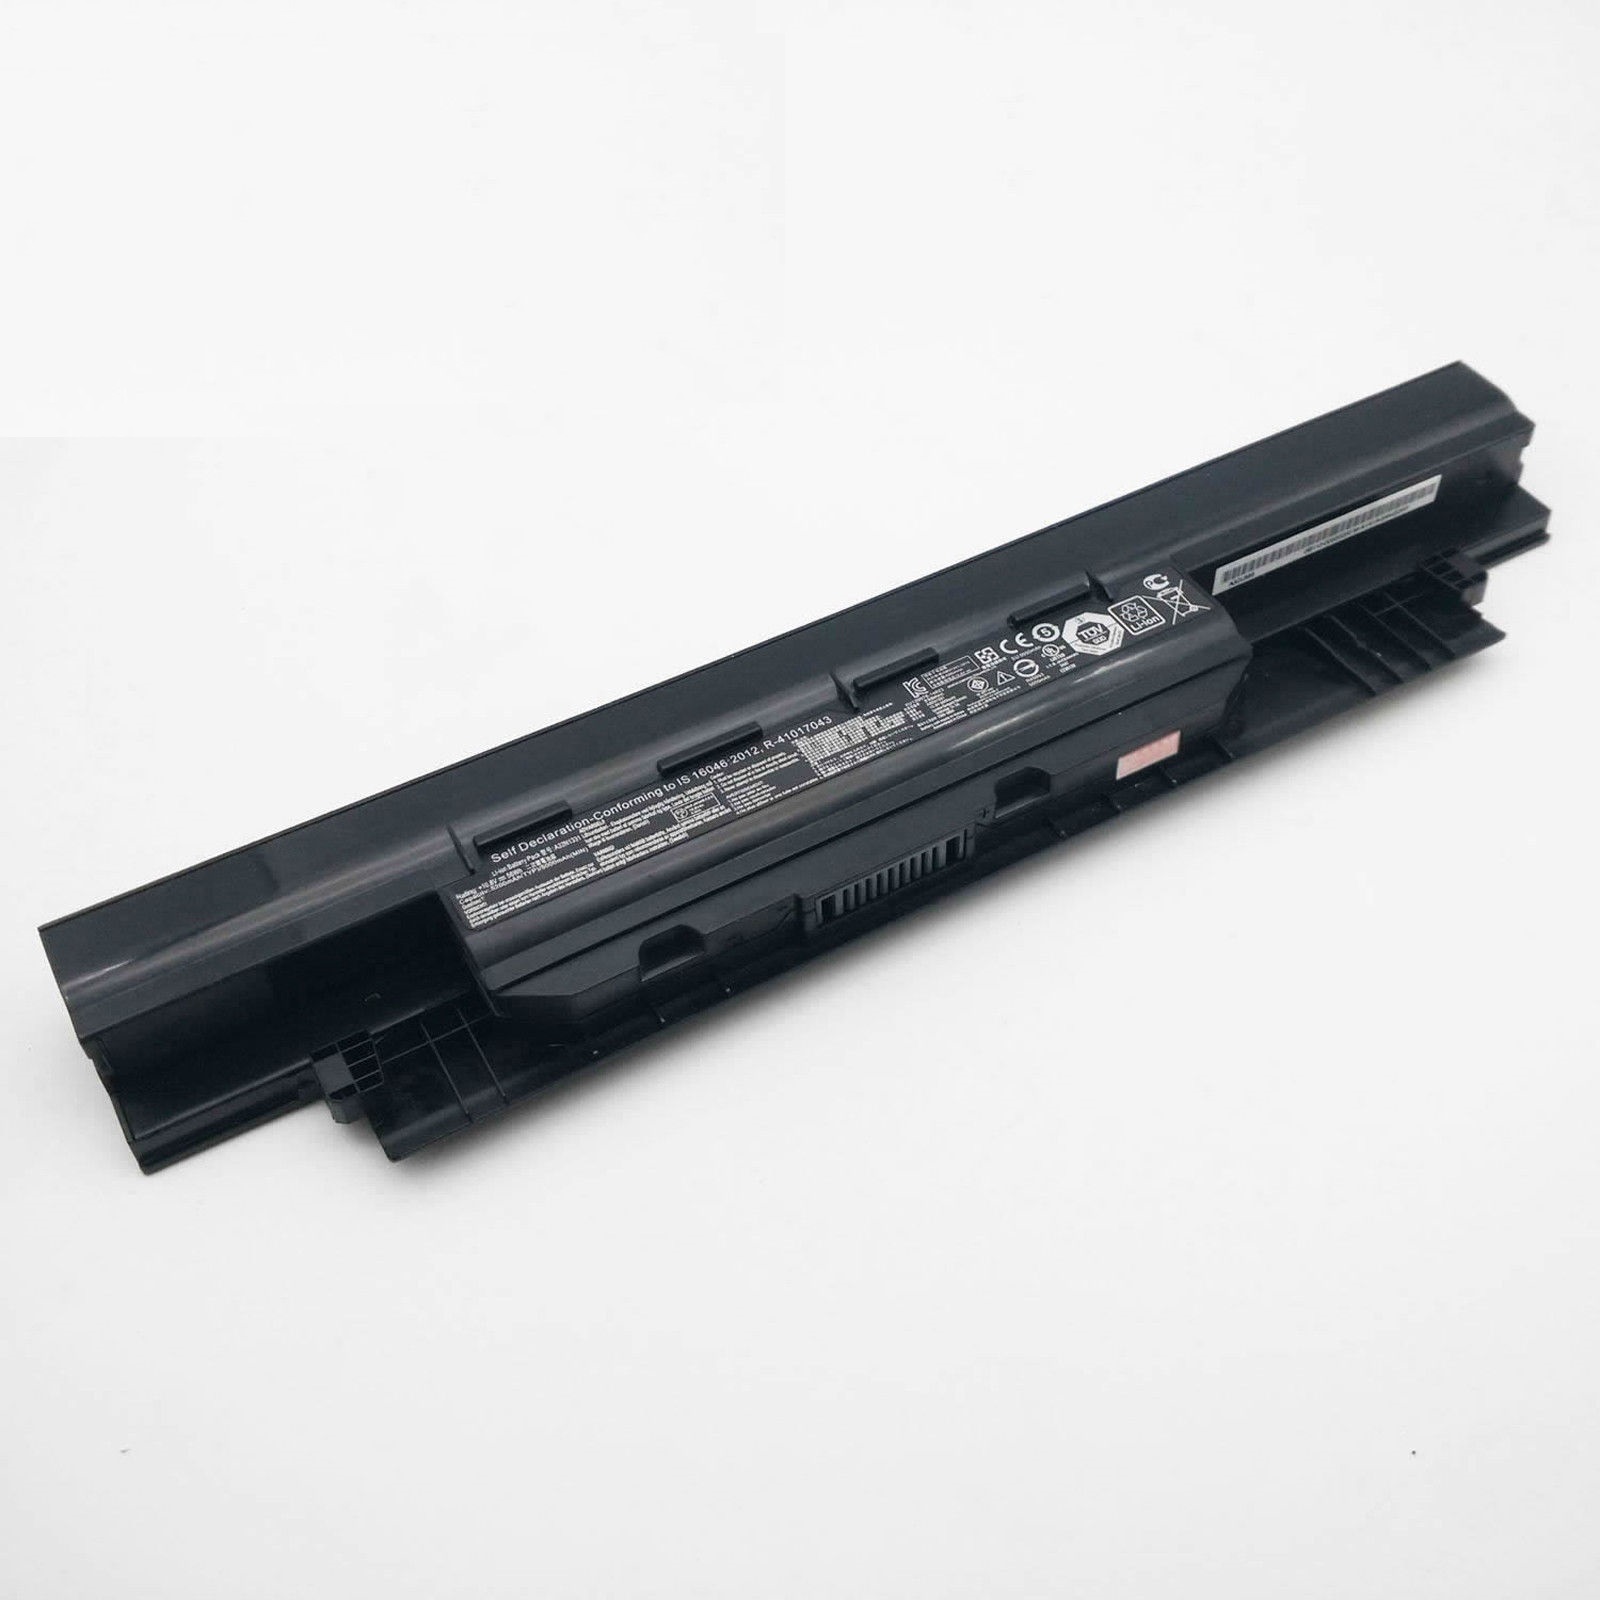 ASUS 450 E451 E551 PU450 PU451 PU550 PU551 PRO450 kompatibelt batterier